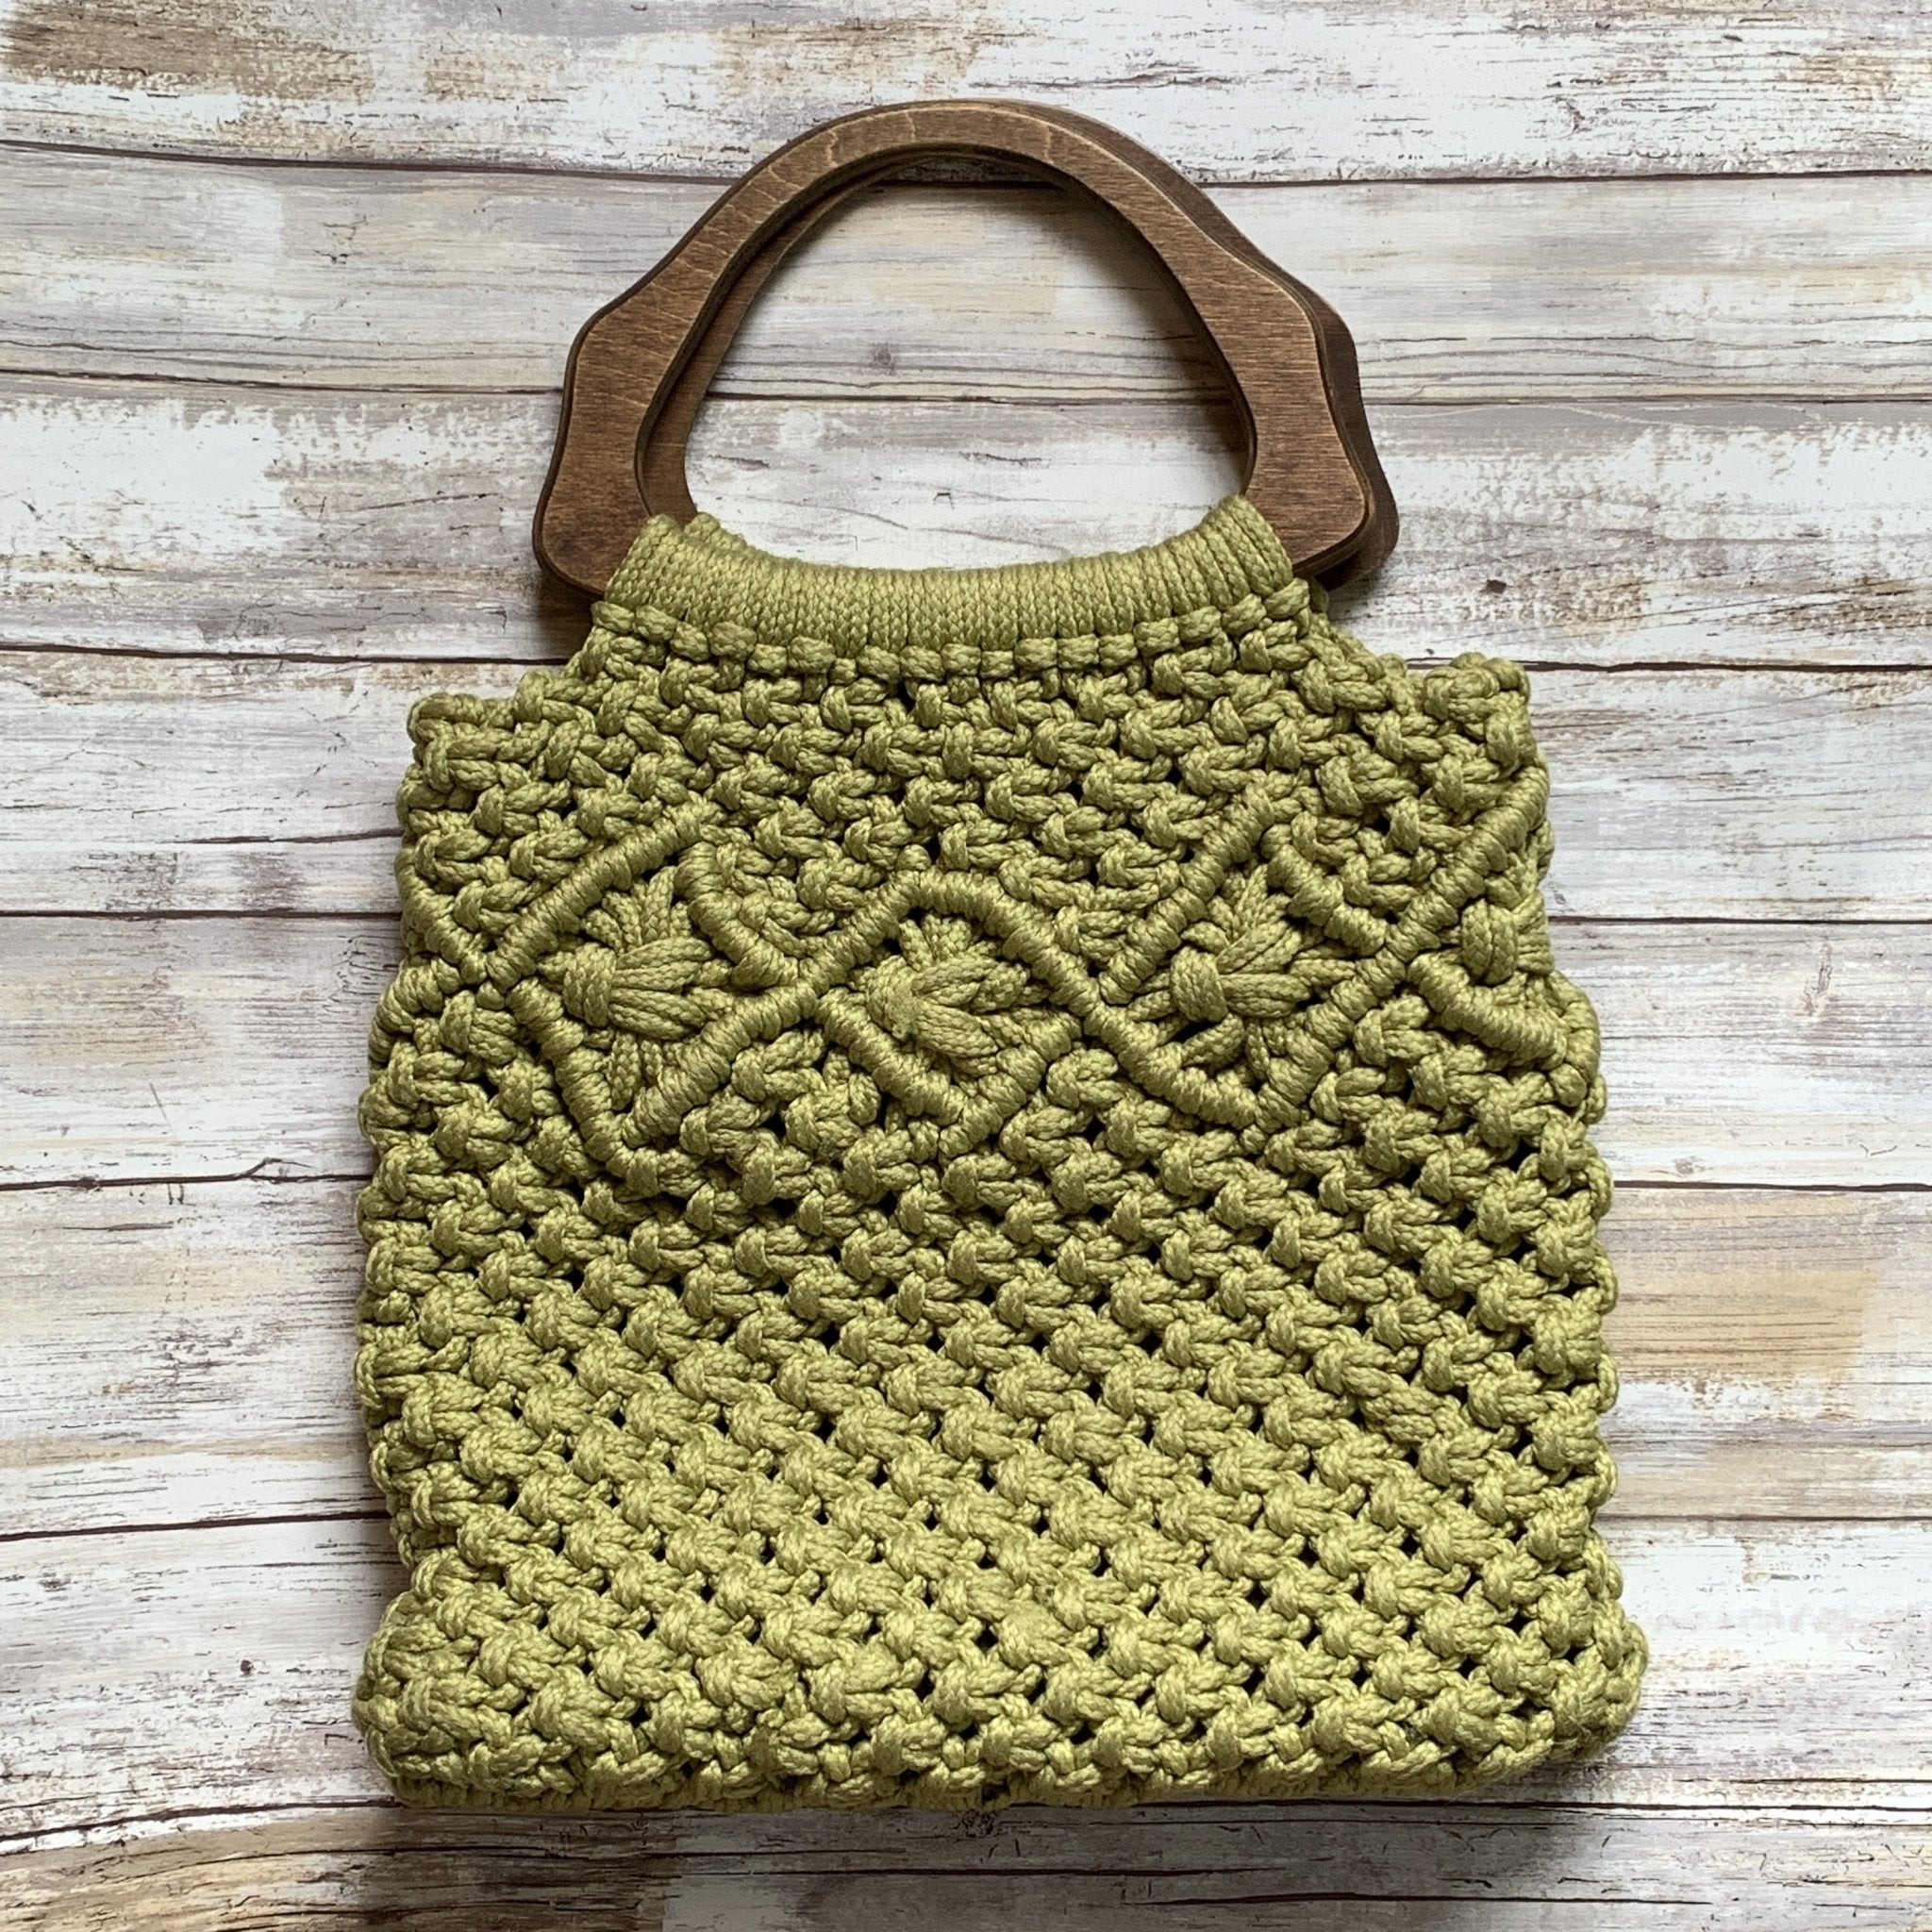 Macrame Shoulder Bag Pattern for Beginners, Macrame Purse, Macrame Bag,  Macrame Clutch, Crochet Bag, Diy Pattern - Etsy